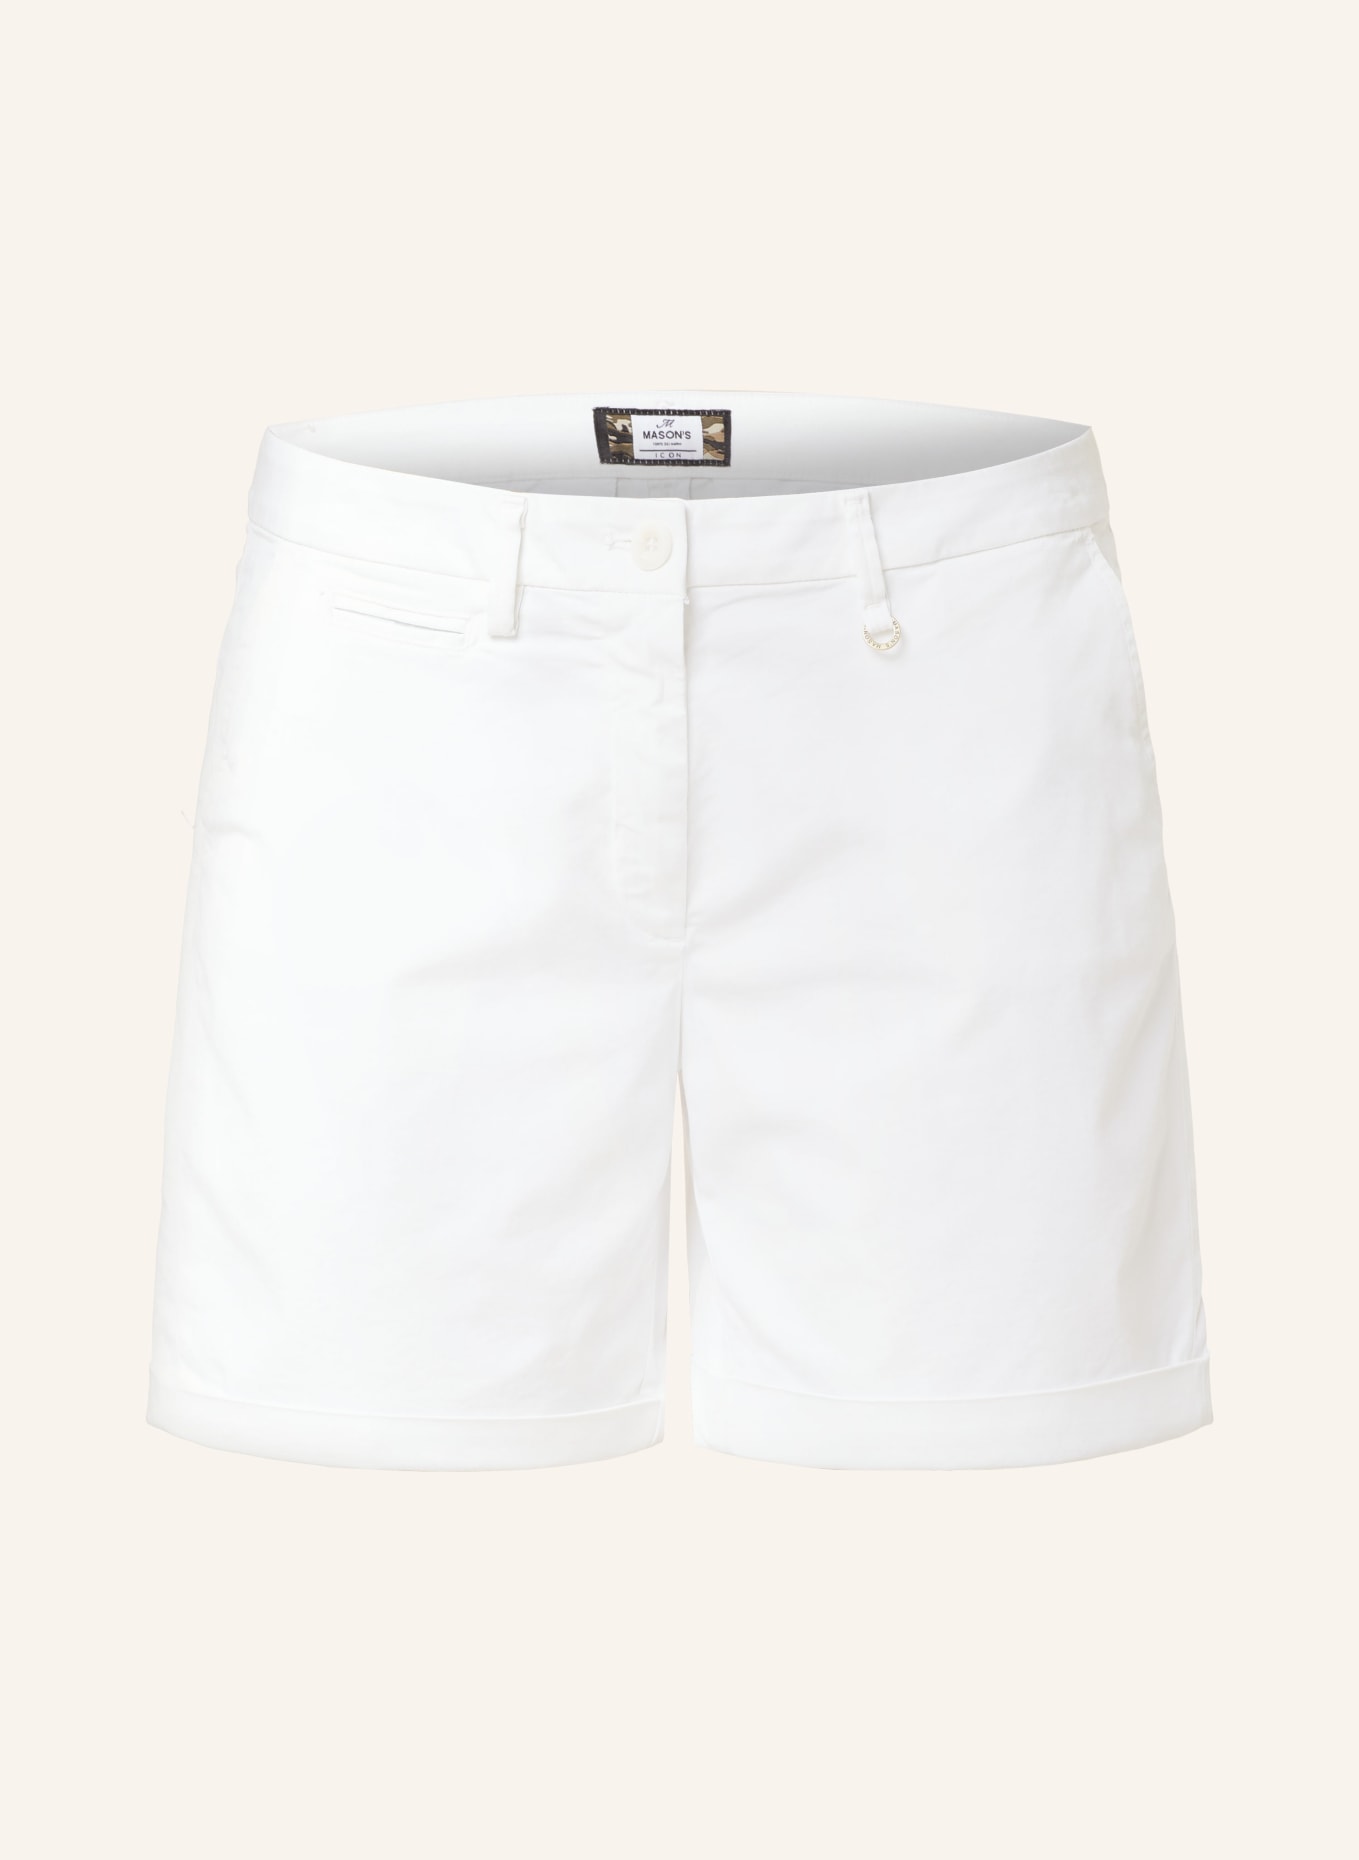 MASON'S Shorts JACQUELINE CURVIE, Color: WHITE (Image 1)